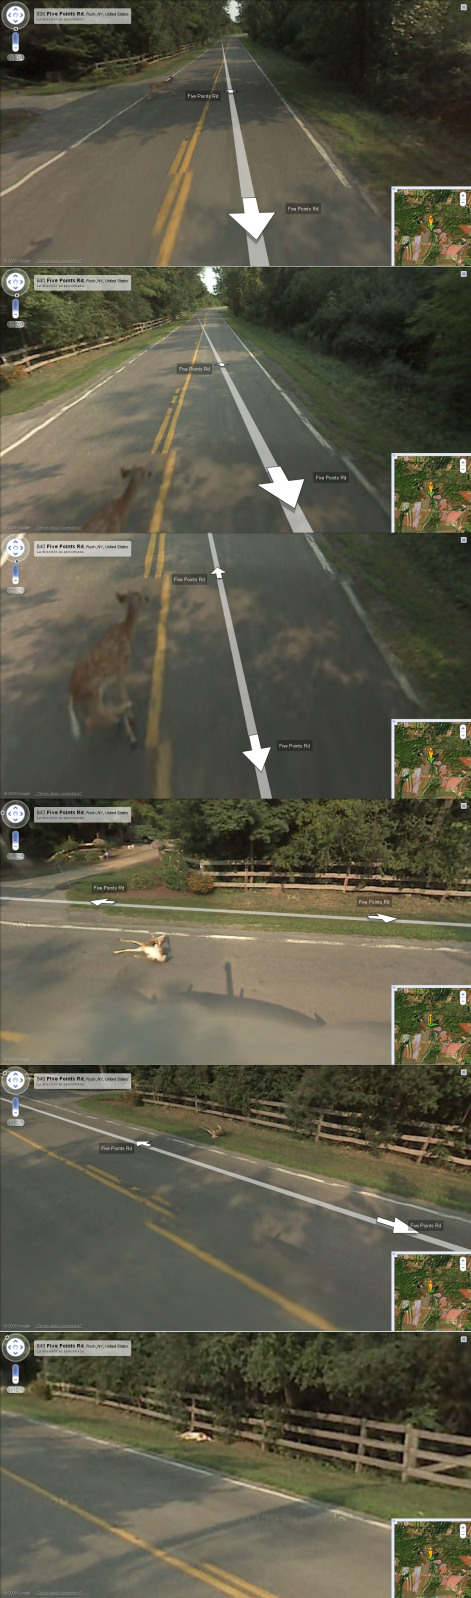 El carro de Google Maps arroya un venadito